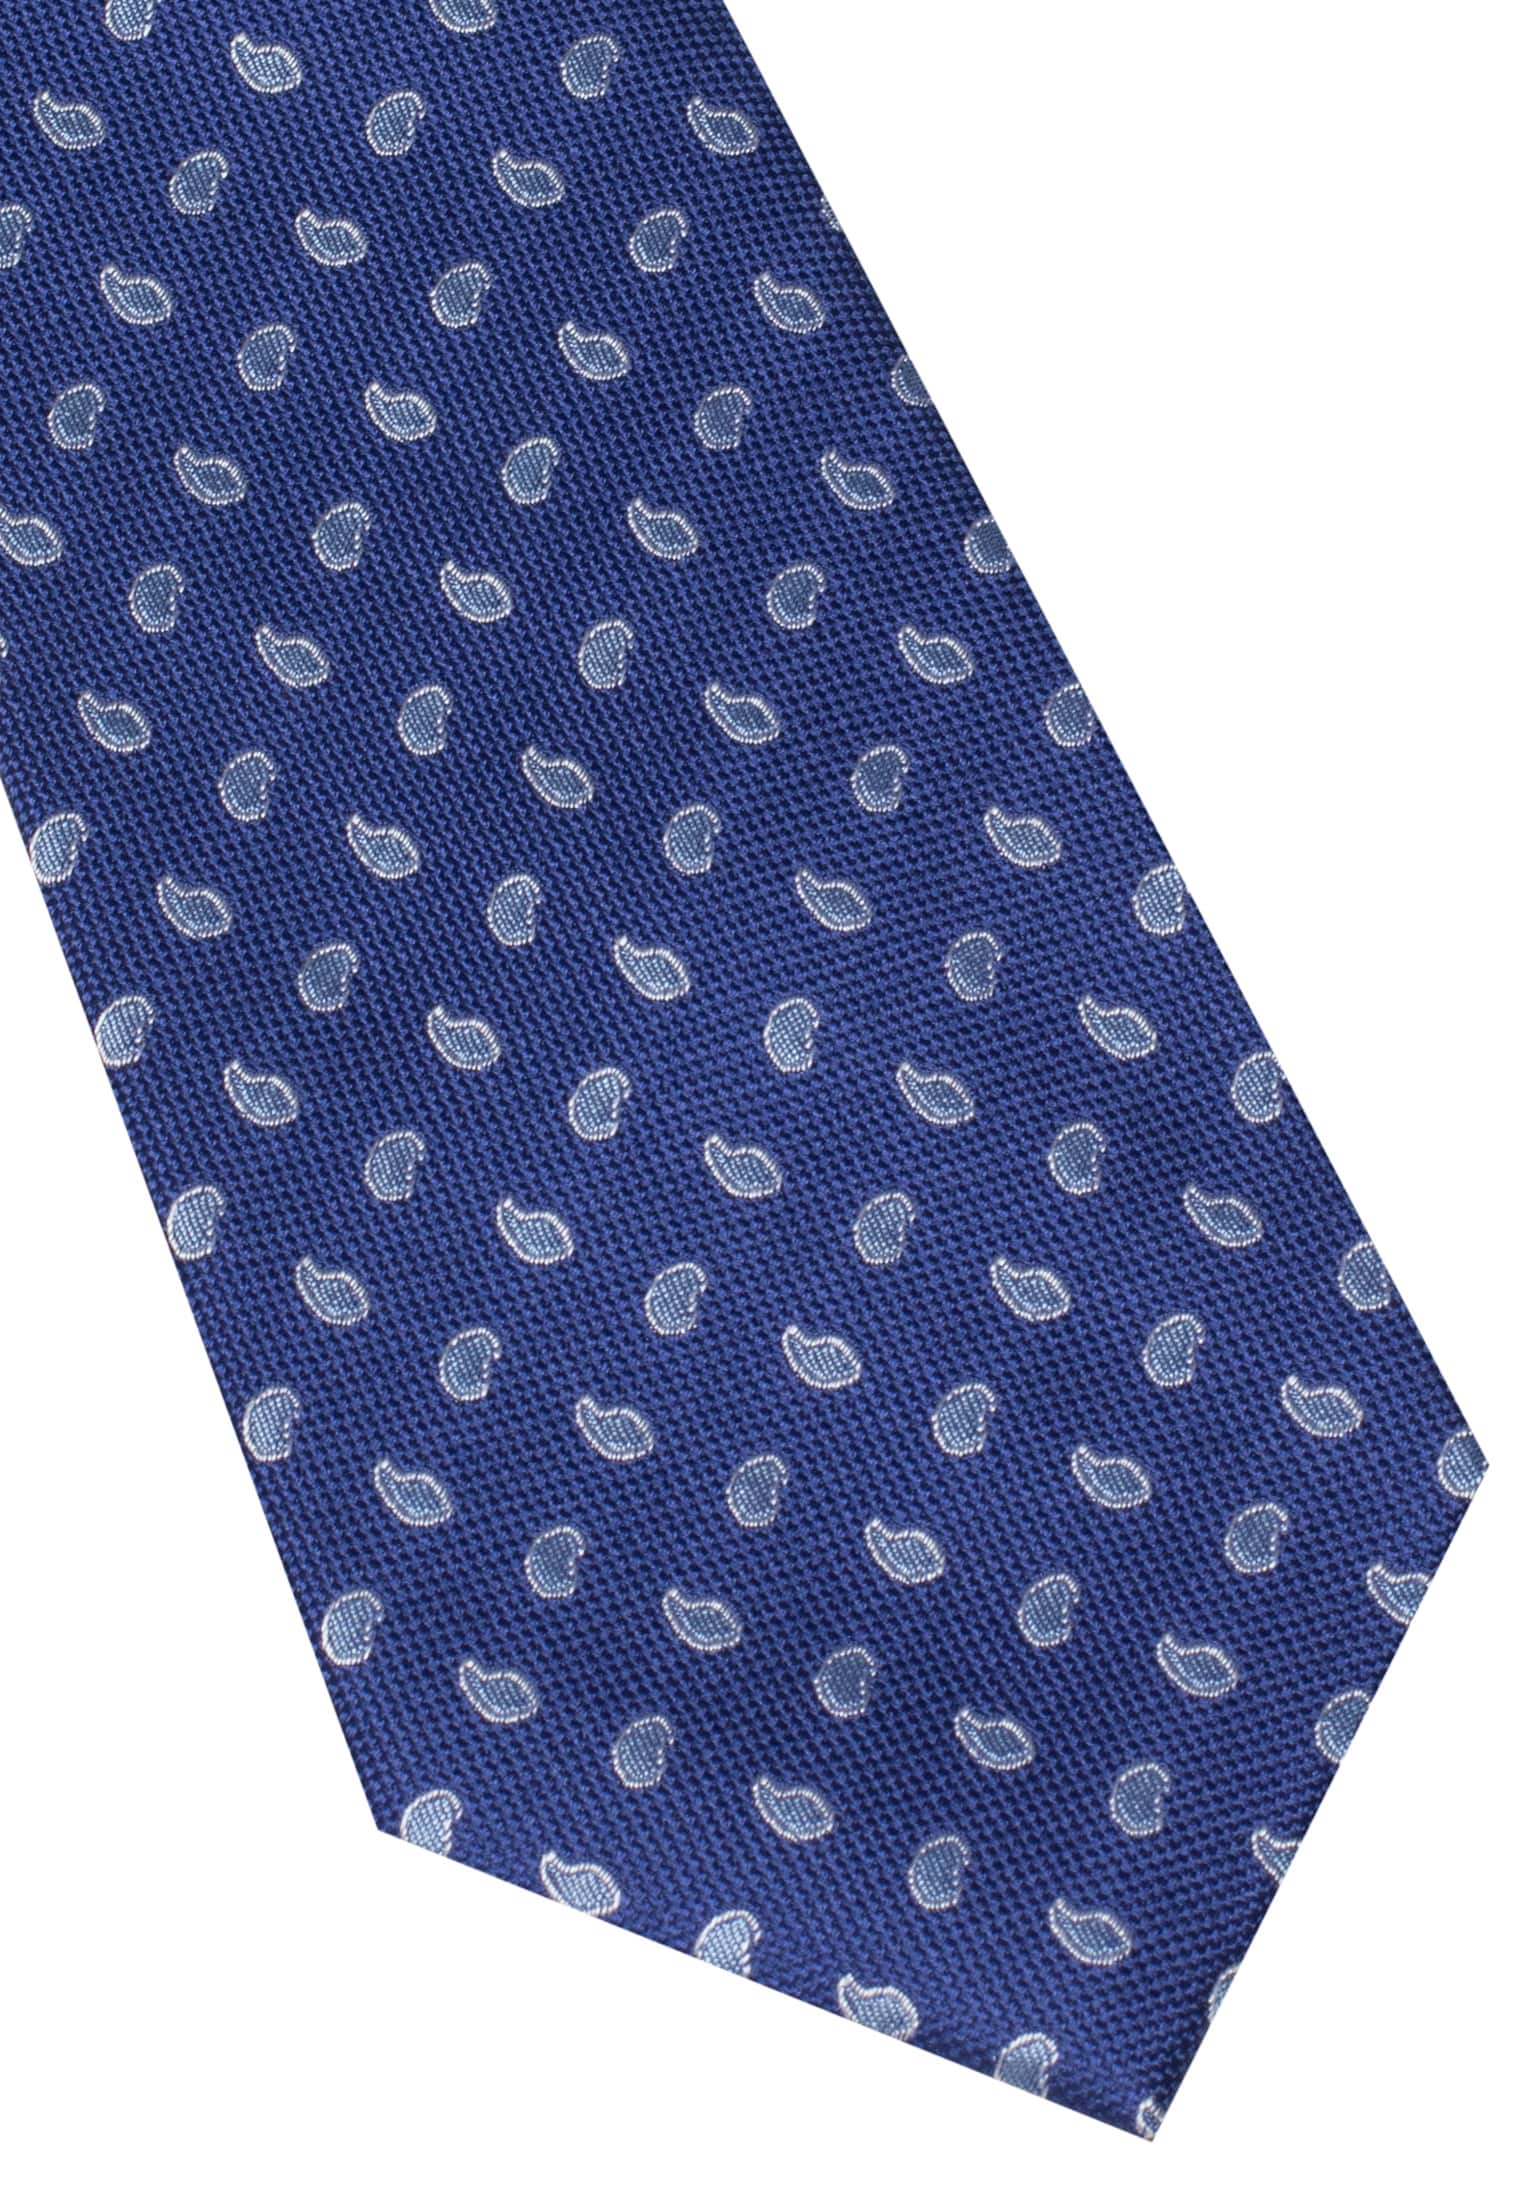 Krawatte in navy/blau gemustert | navy/blau | 142 | 1AC00541-81-83-142